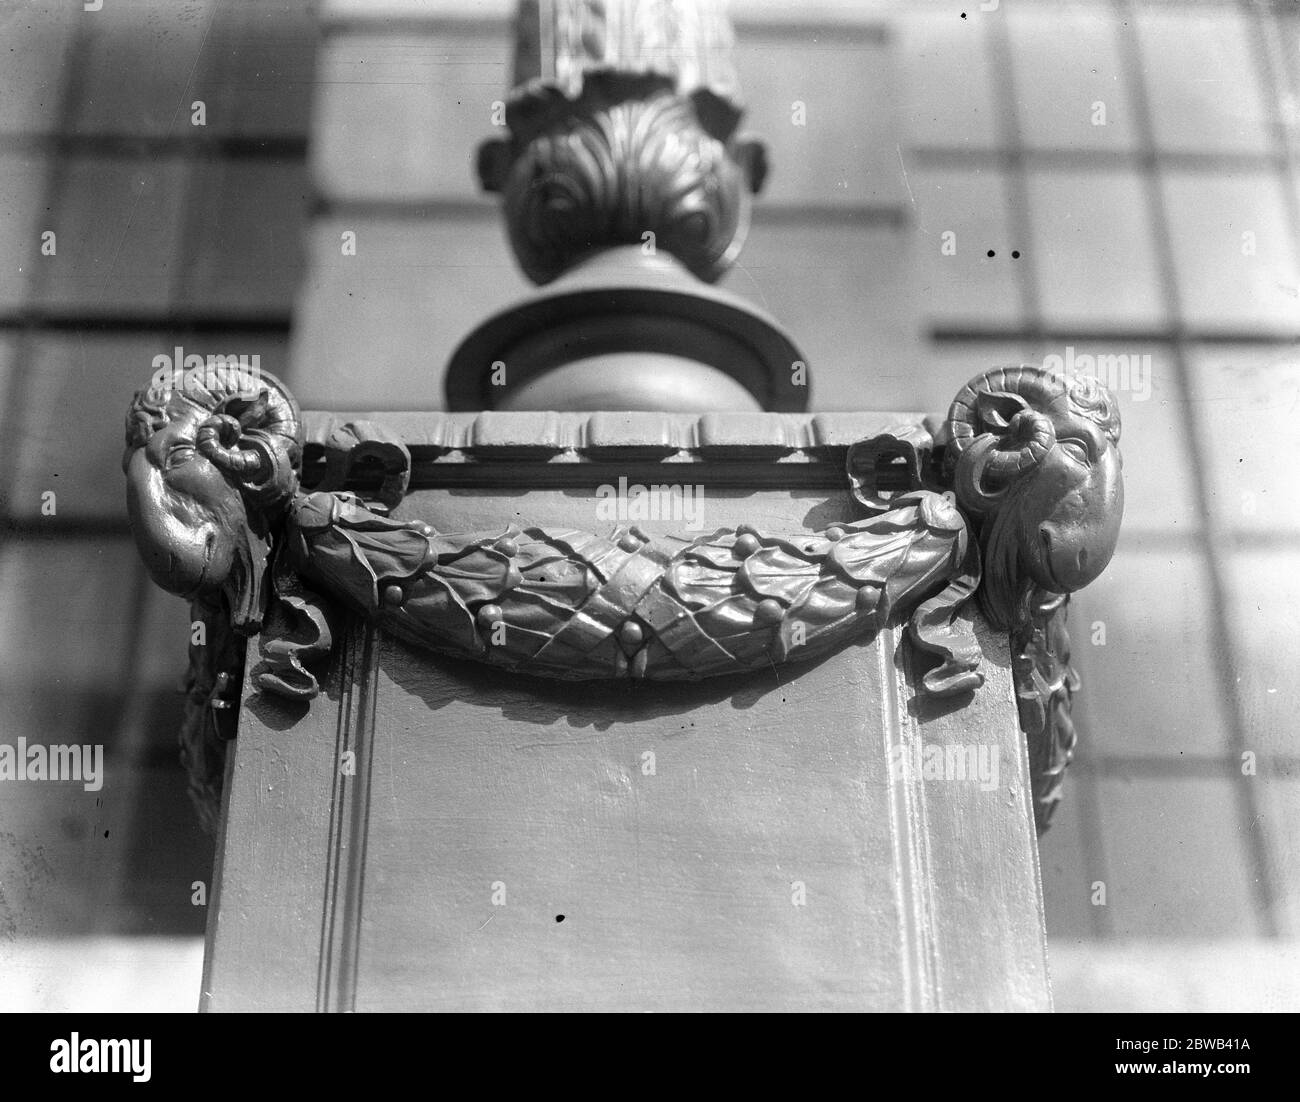 New Port of London Authority Building EIN Detail des dekorativen Schemas die skulpturierten Widderköpfe sind für ihren Ausdruck bemerkenswert, der mit den Veränderungen in der natürlichen Beleuchtung und Position des Zuschauers 1922 zu variieren scheint Stockfoto